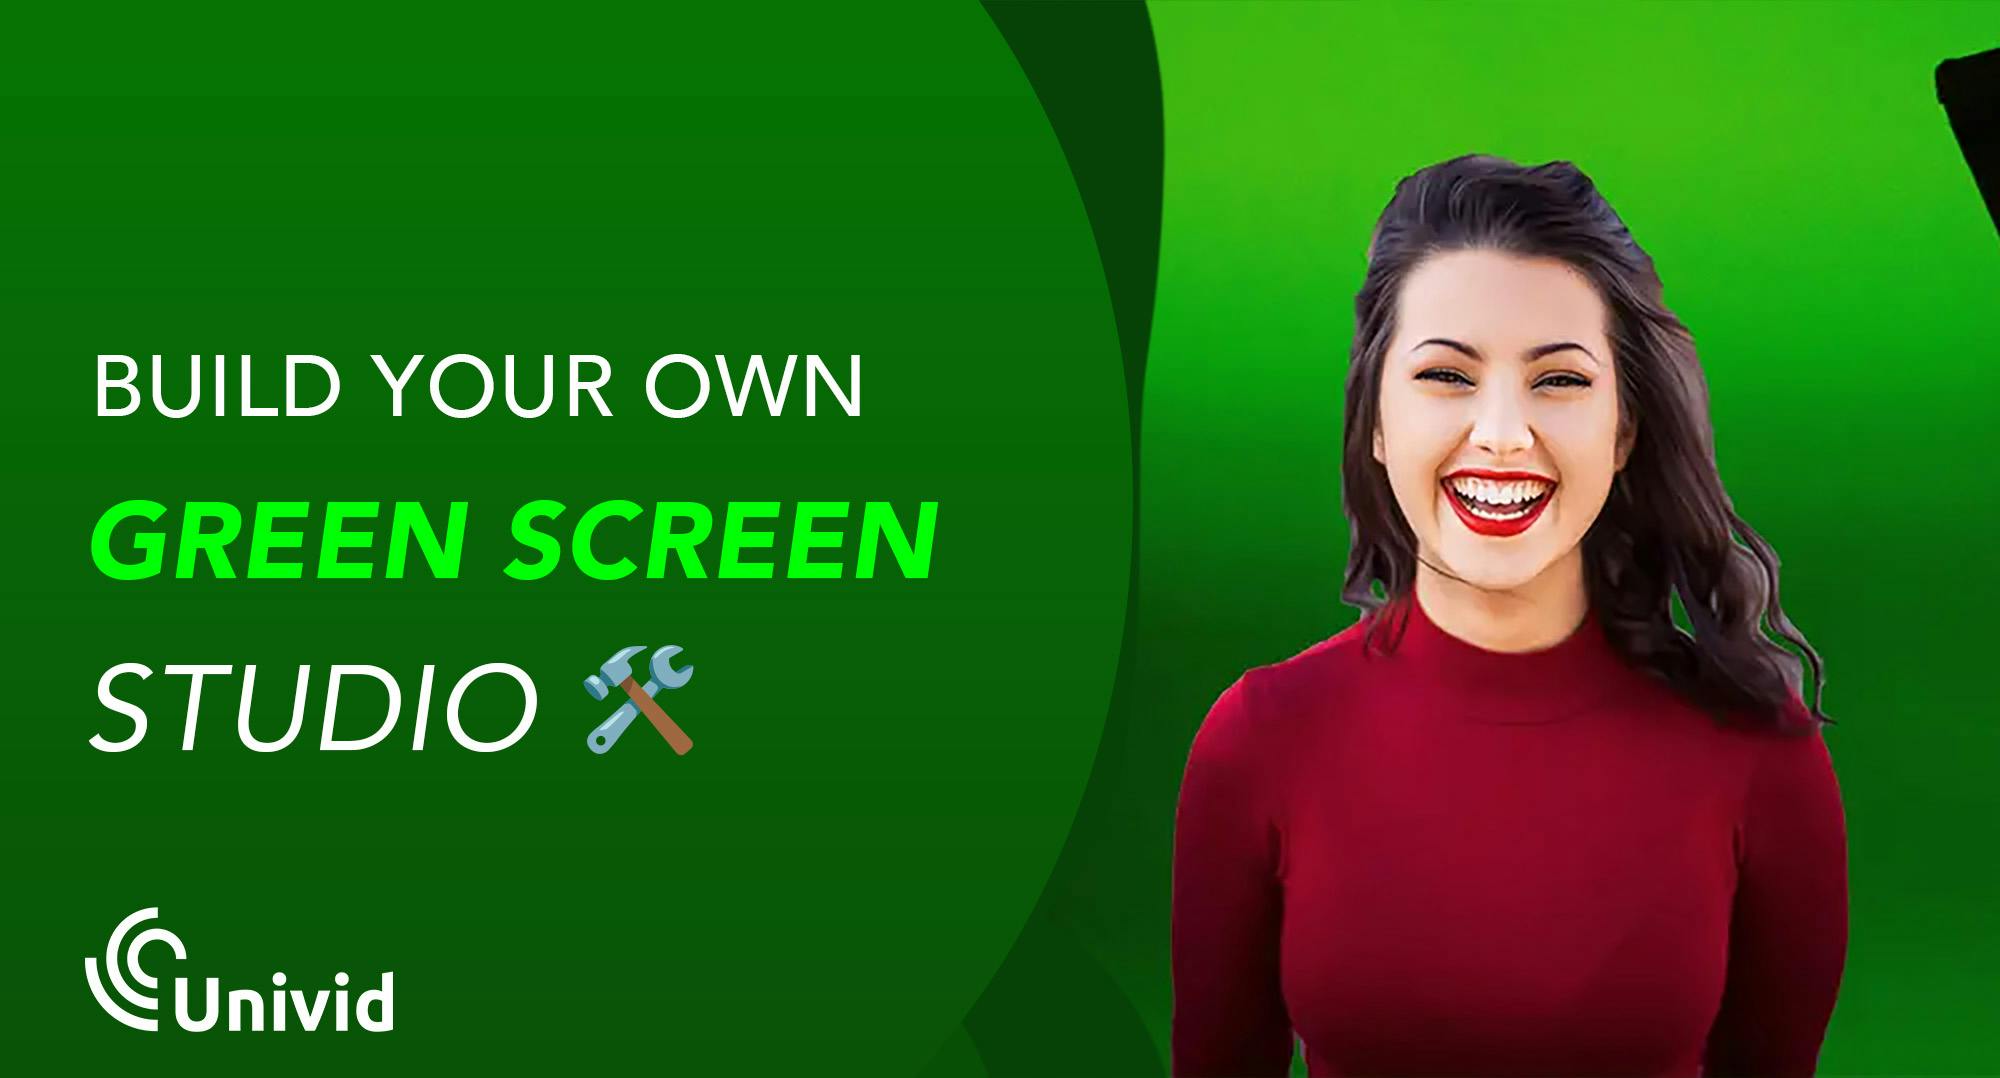 Att bygga en green screen studio kräver inte mer än ett grönt tyg som bakgrund och en app eller program på din dator. Vi går igenom vad en green screen är och hur det fungerar att sätta upp en egen – antingen för hemmet eller företagets kontorsstudio. Du får även 5 tips på vad du ska tänka på när du livestreamar med virtuell bakgrund.